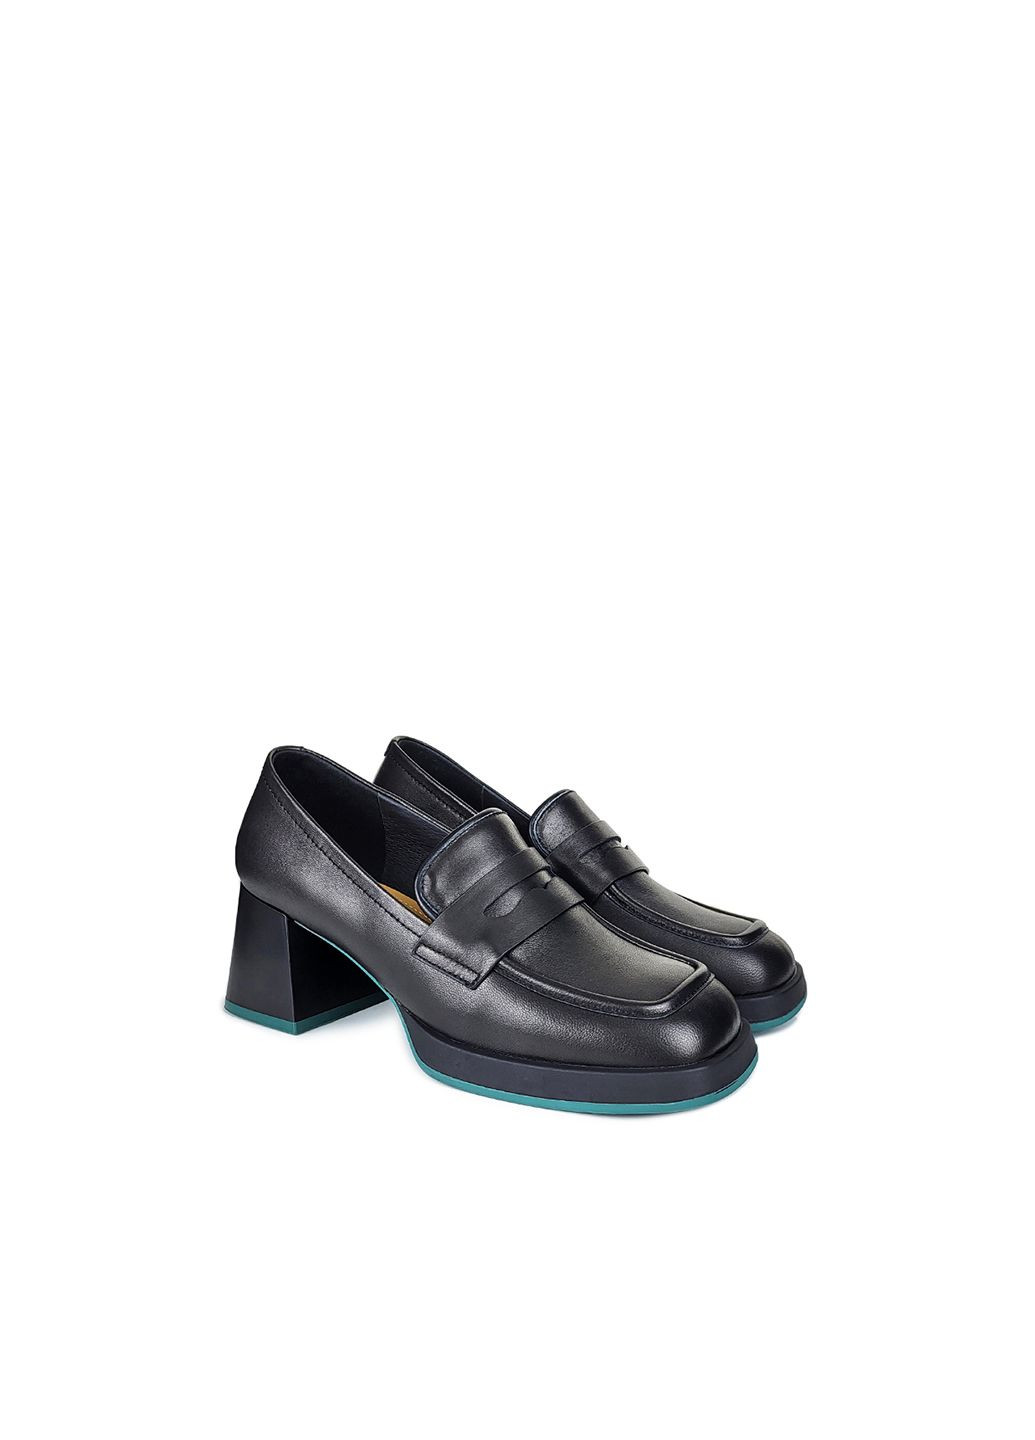 Женские кожаные черные лоферы,,3S1391-5-1ч,38 Berkonty на высоком каблуке